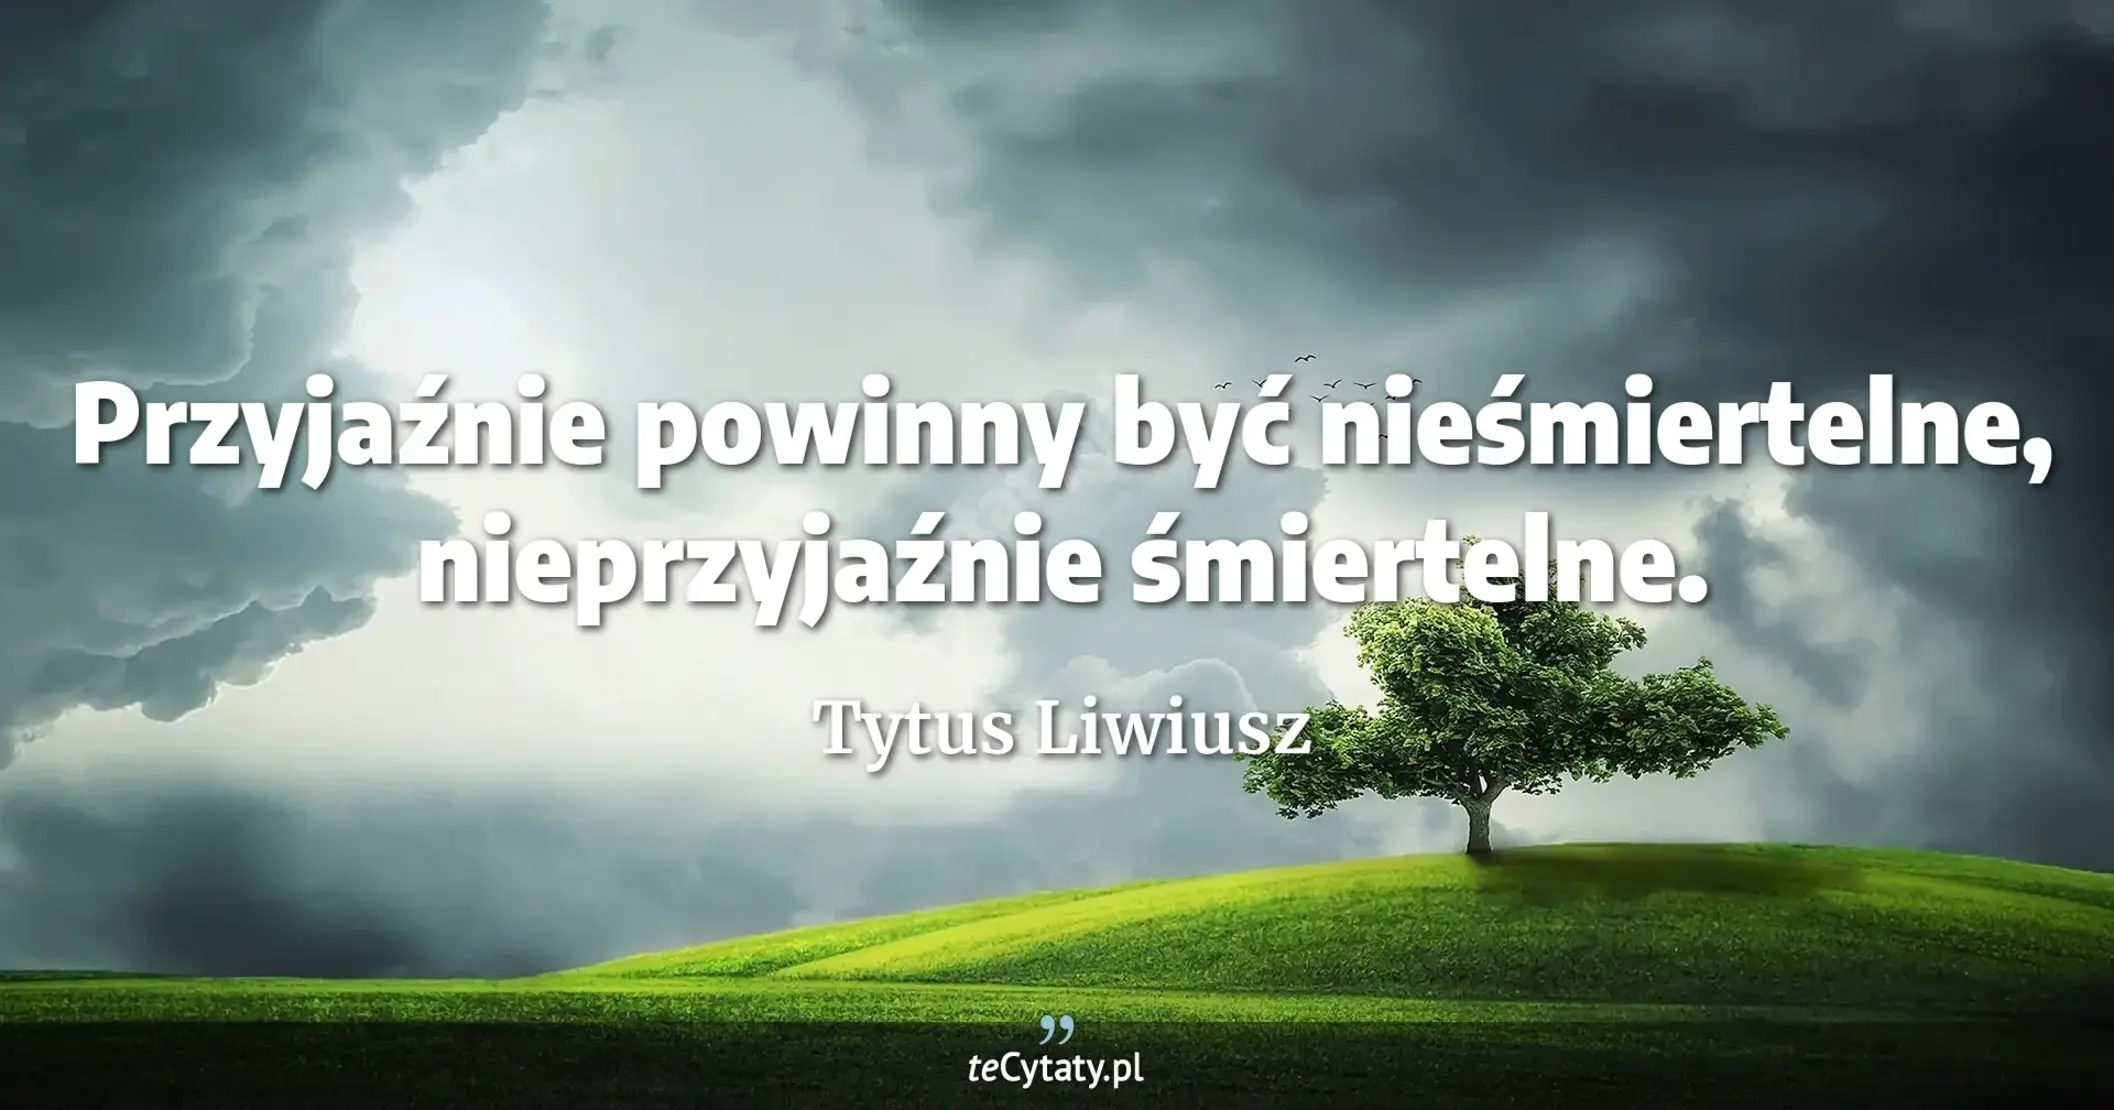 Przyjaźnie powinny być nieśmiertelne, nieprzyjaźnie śmiertelne. - Tytus Liwiusz